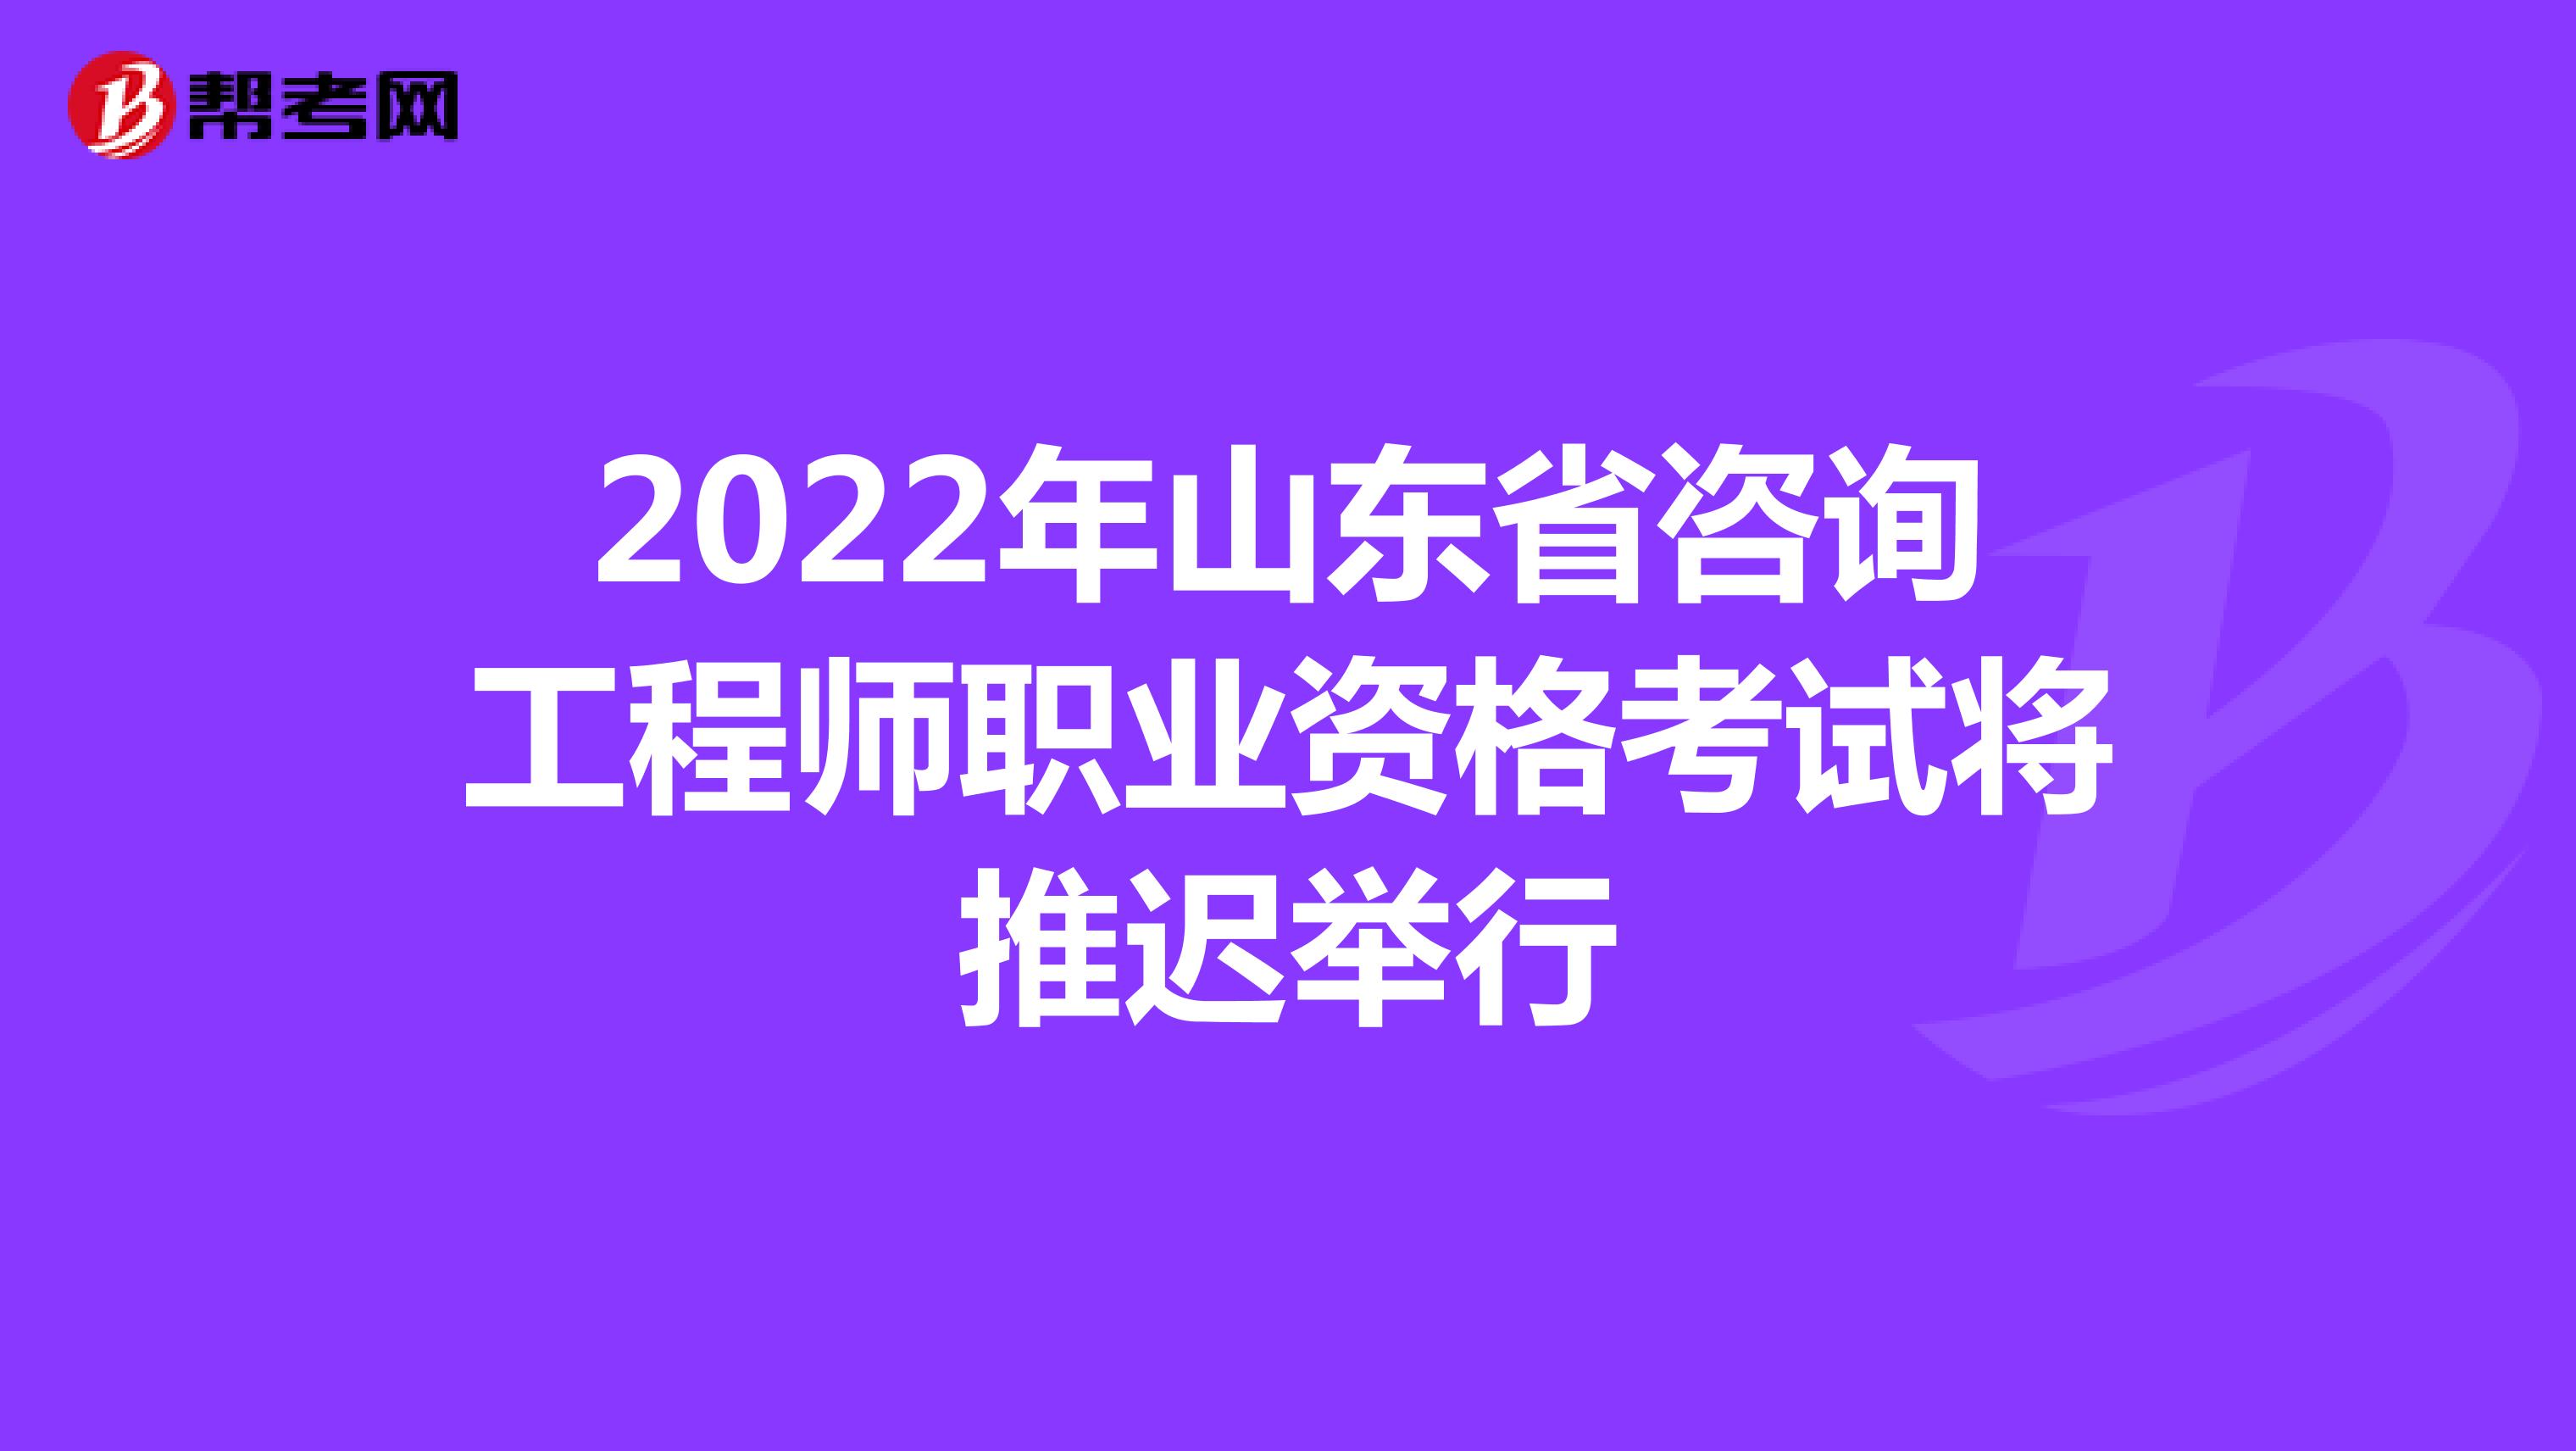 2022年山东省咨询工程师职业资格考试将推迟举行